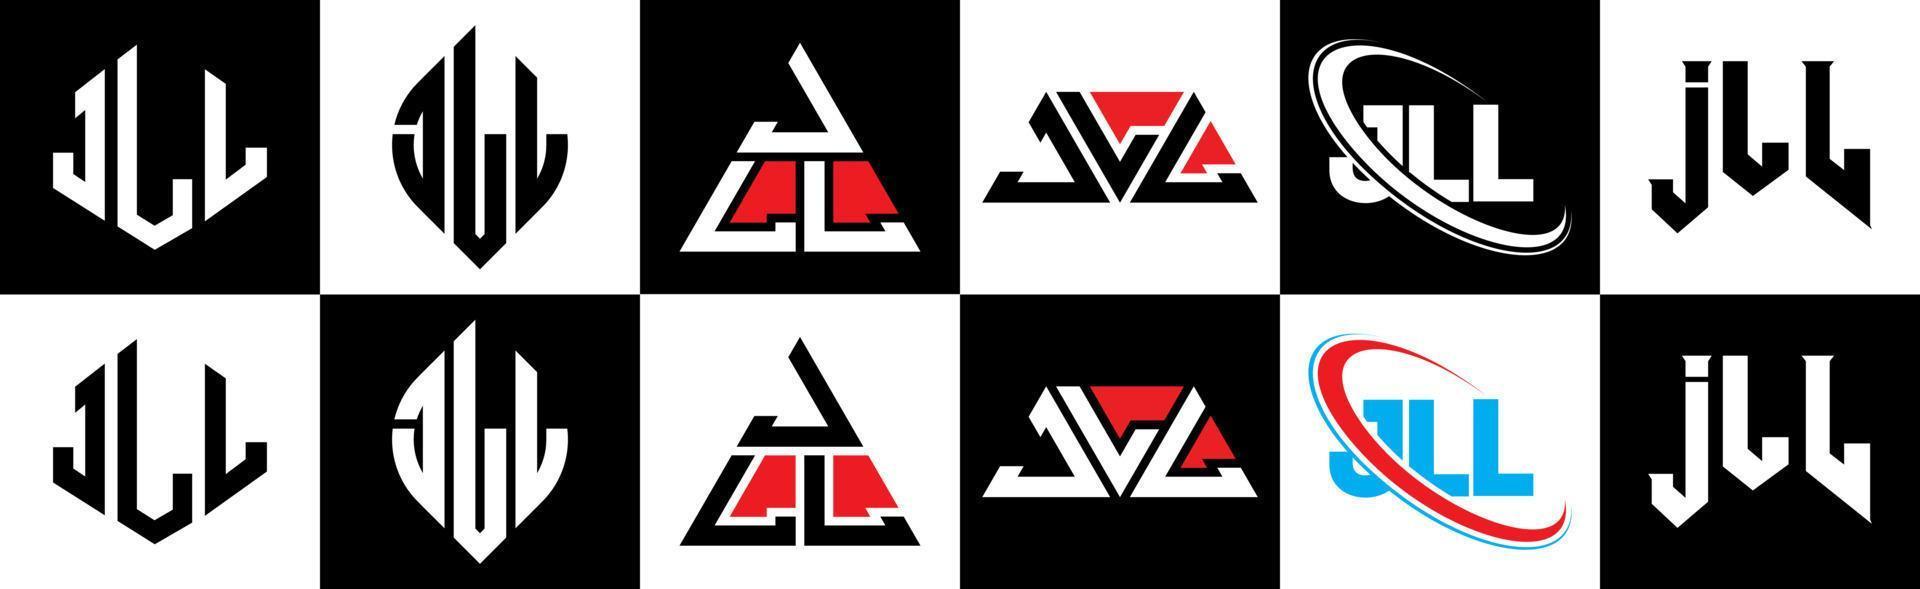 Jll-Buchstaben-Logo-Design in sechs Stilen. jll polygon, kreis, dreieck, sechseck, flacher und einfacher stil mit schwarz-weißem buchstabenlogo in einer zeichenfläche. Jll minimalistisches und klassisches Logo vektor